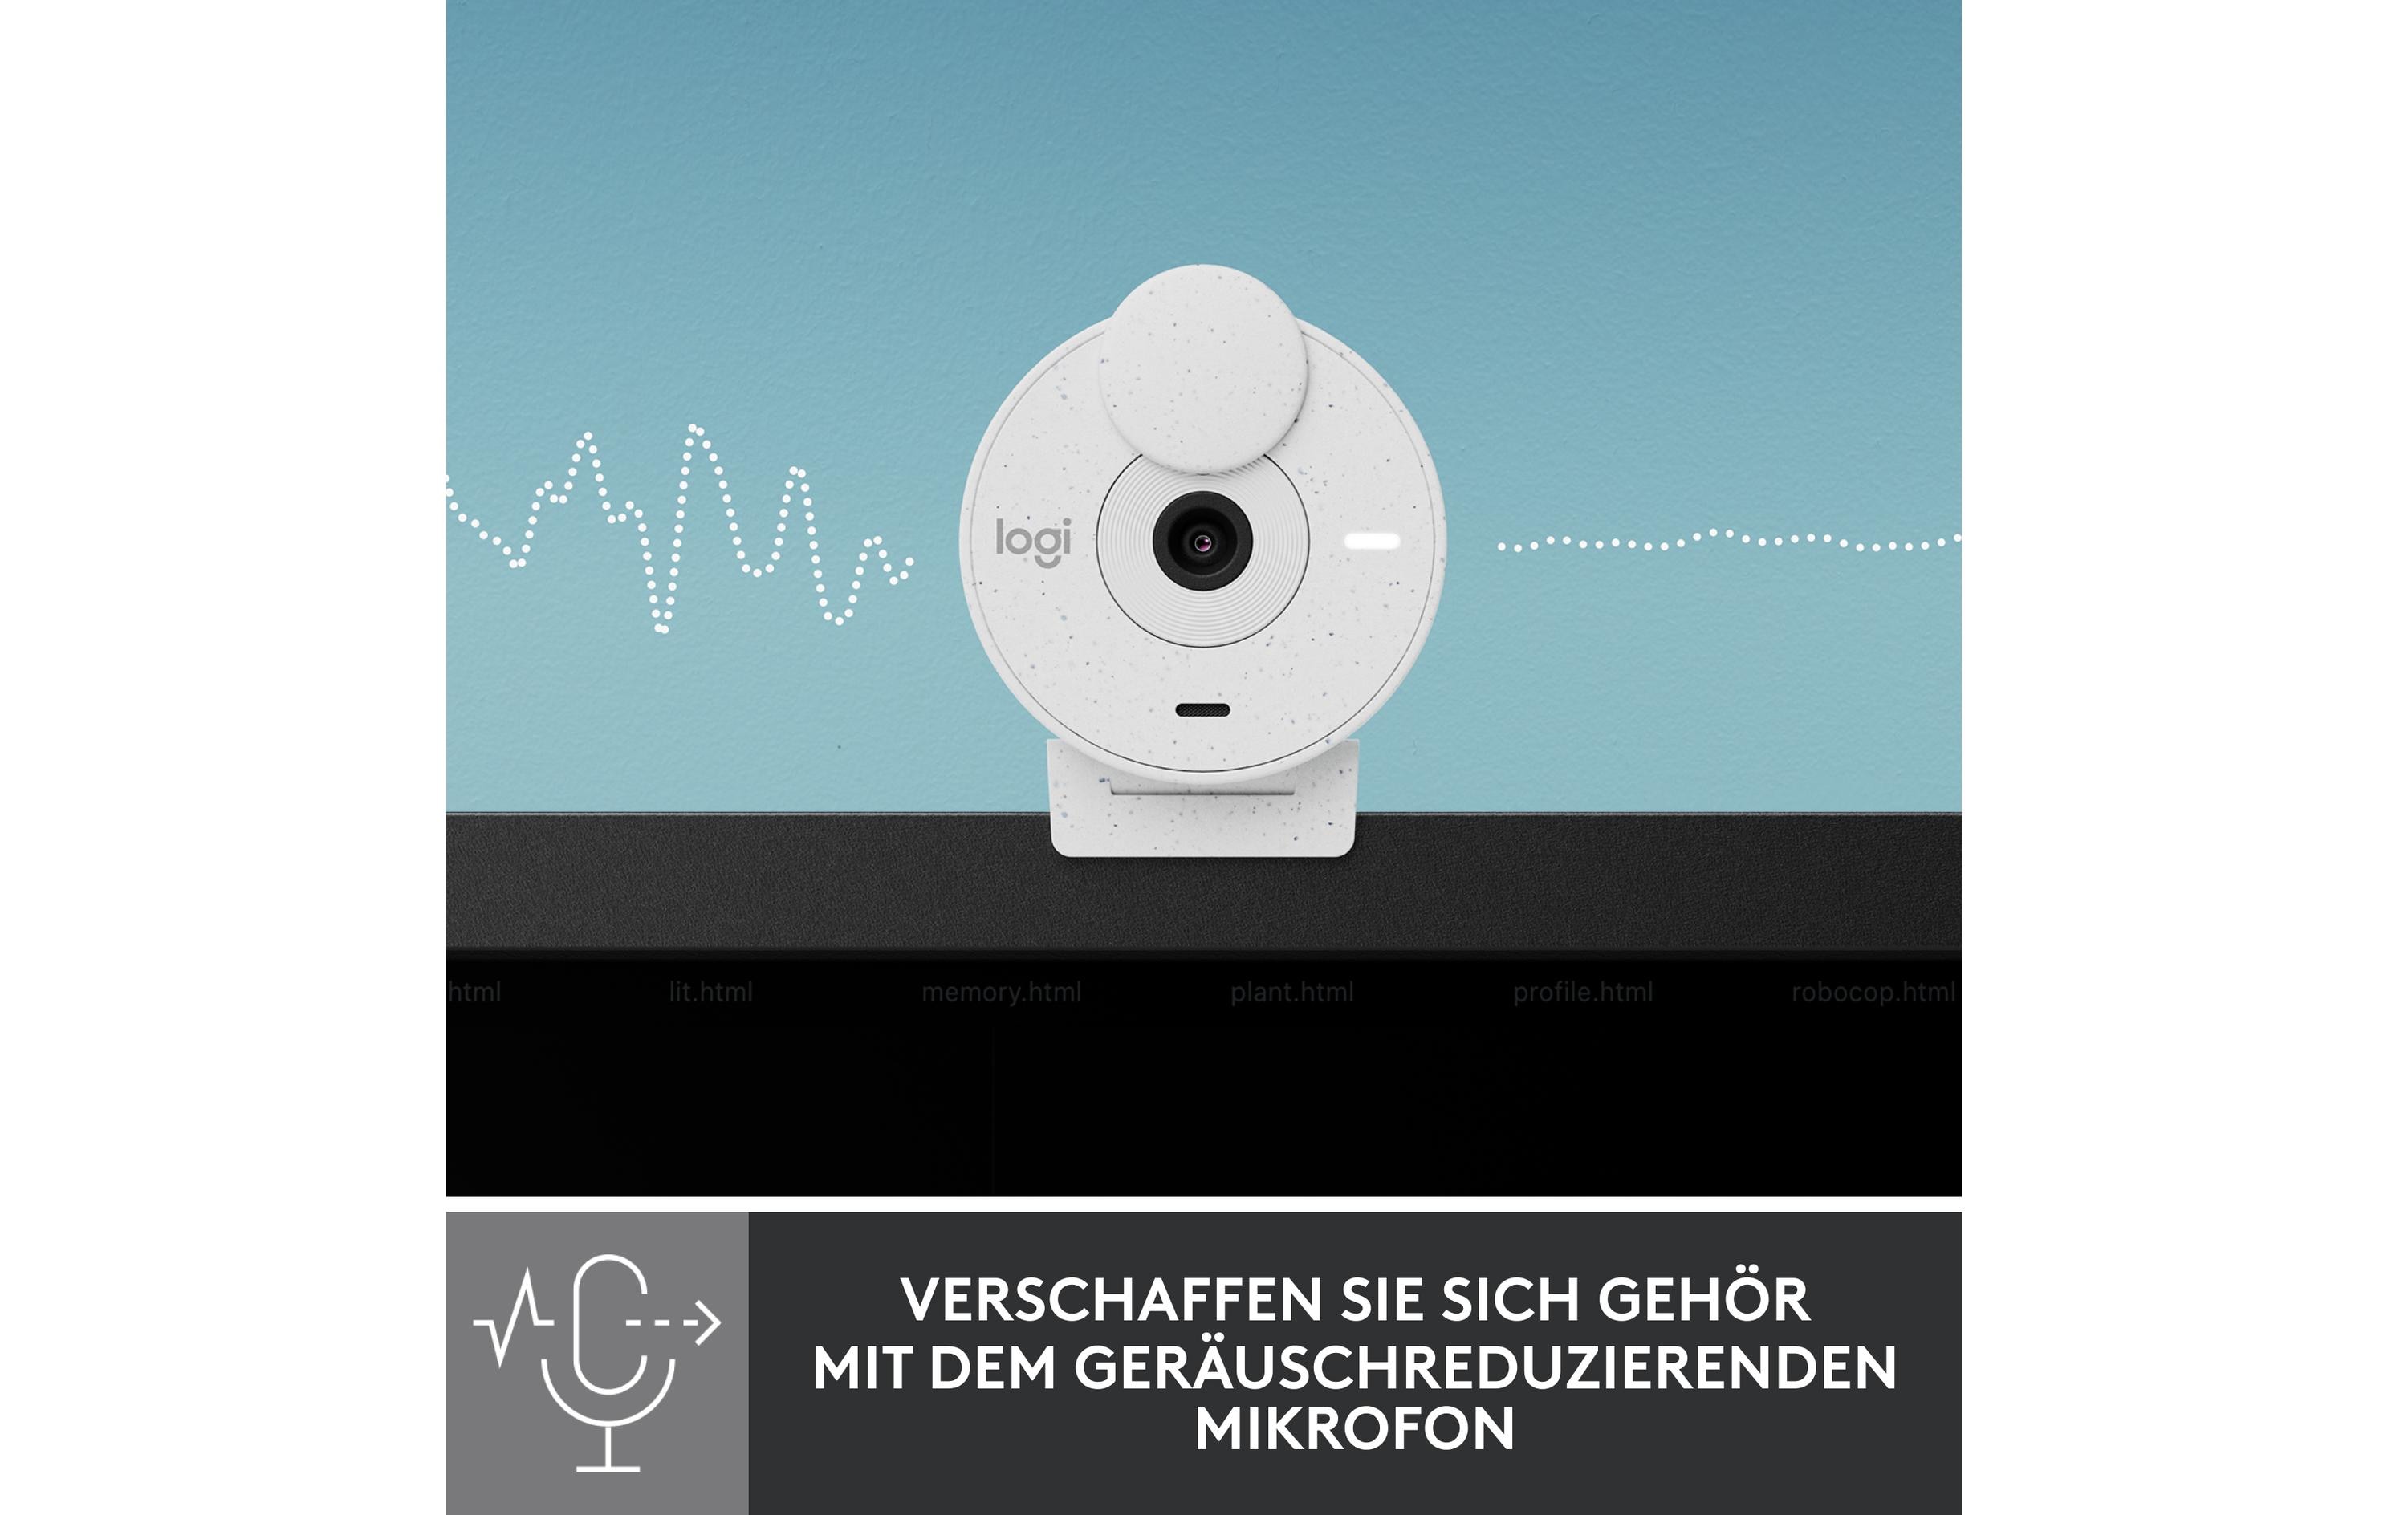 Logitech Webcam Brio 300 White